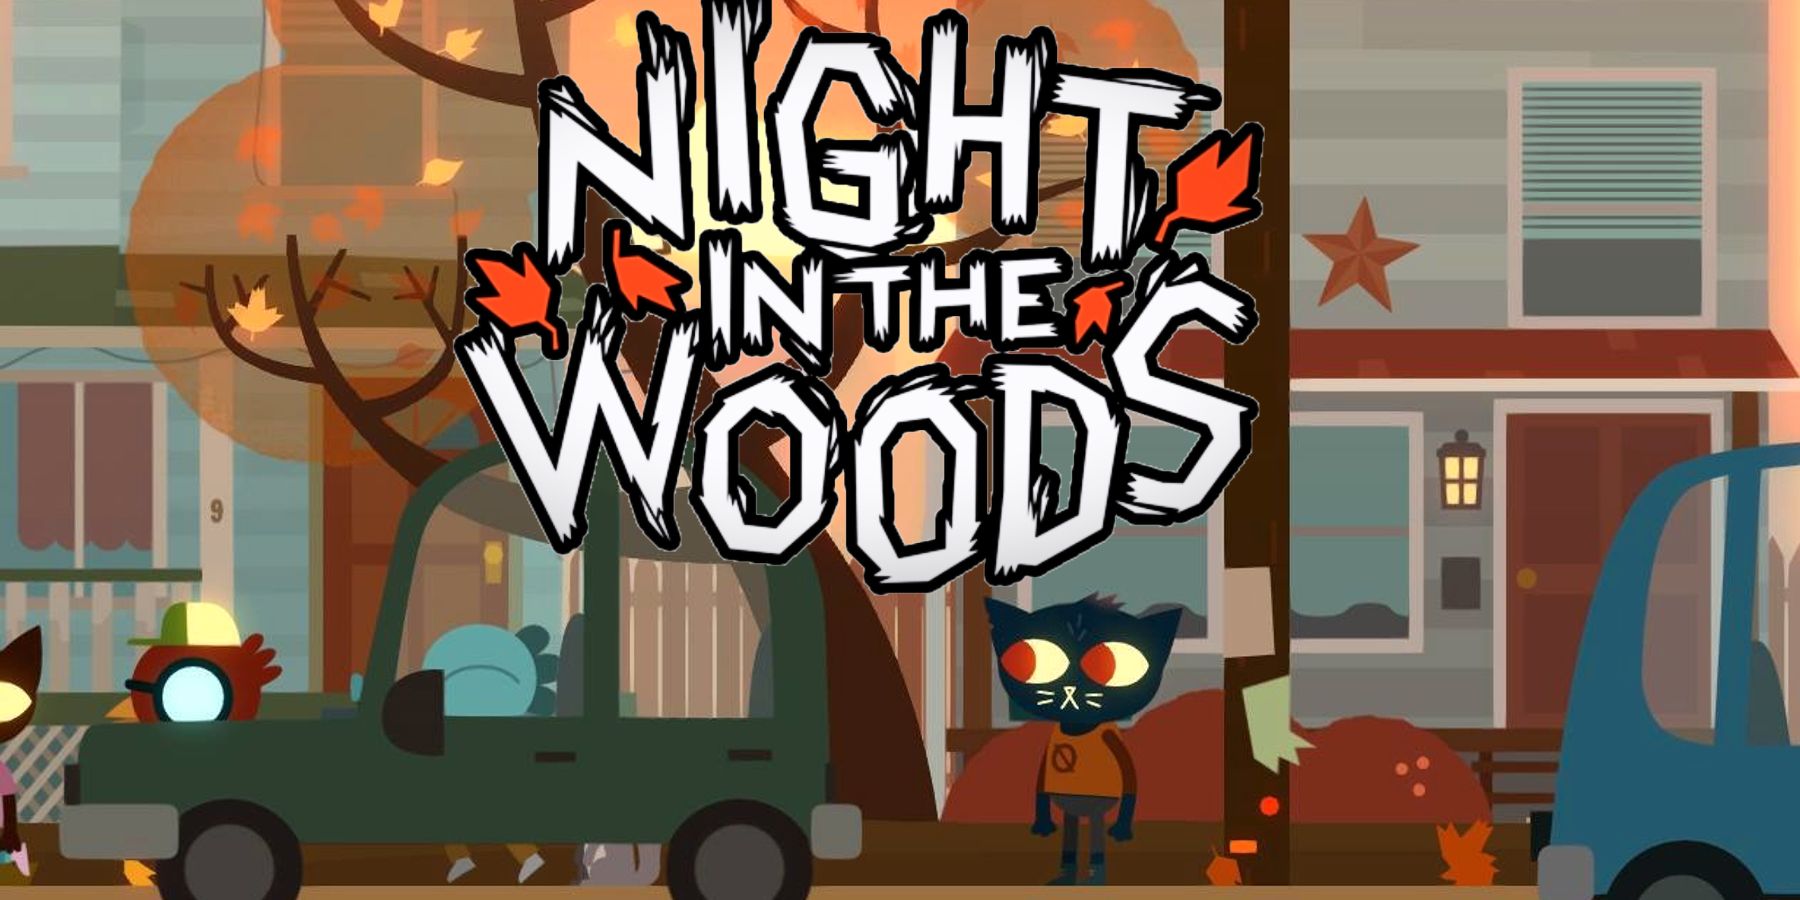 Xbox Game Pass Game Night in the Woodsは、秋の気分を得るのに最適なゲームです